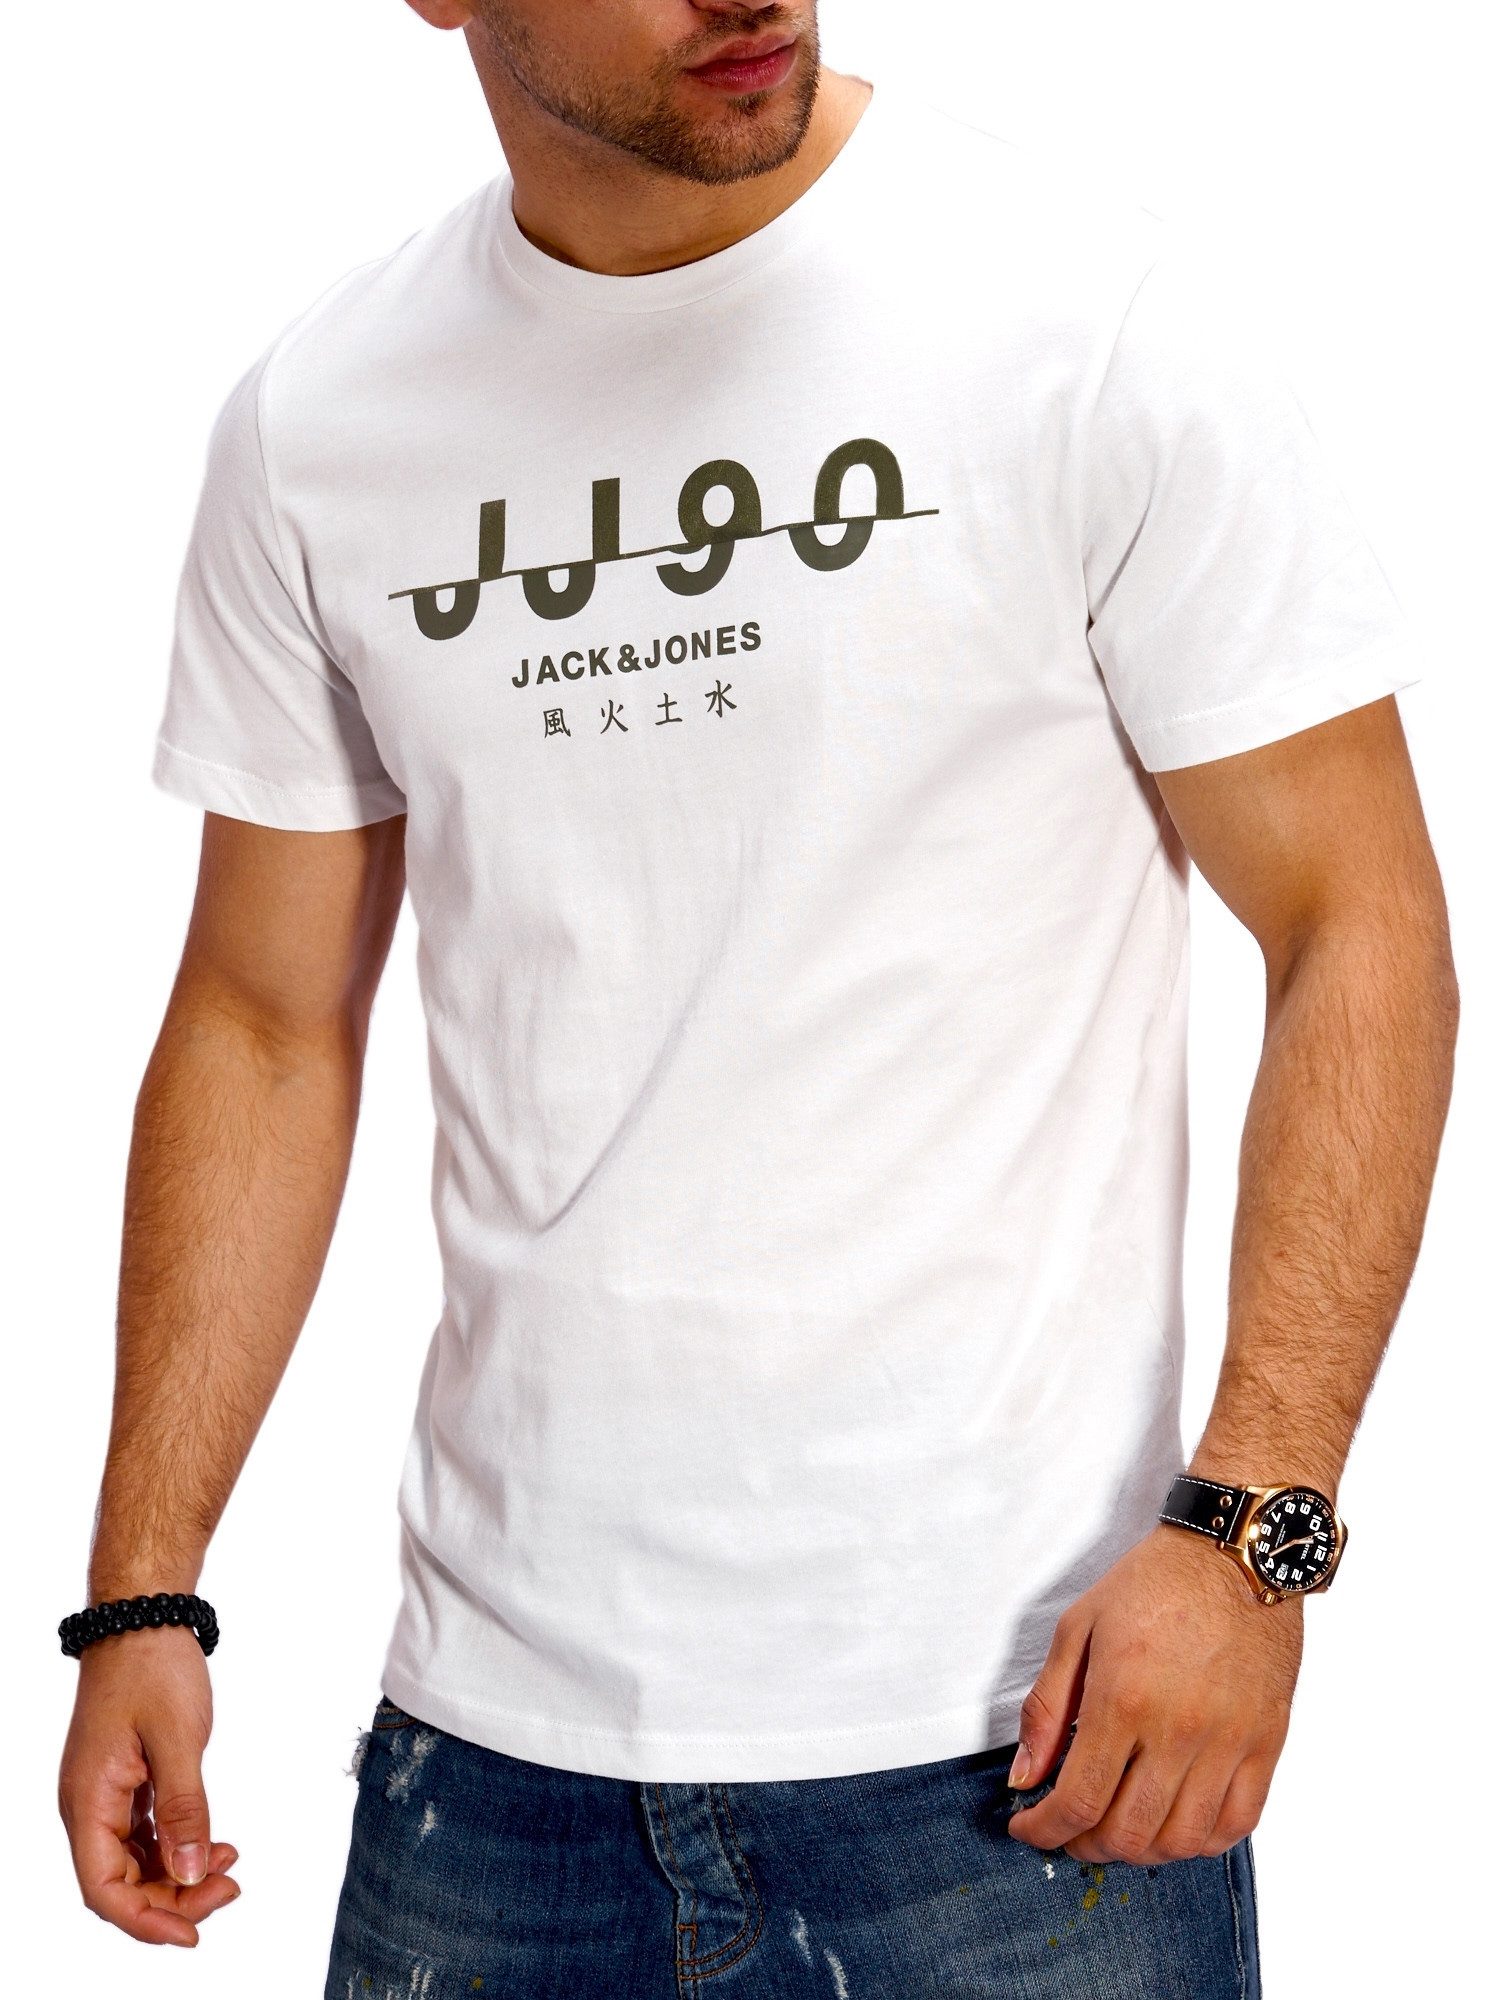 Jack & Jones T-Shirt JJJOR90TEE Herren mit Print O-Neck